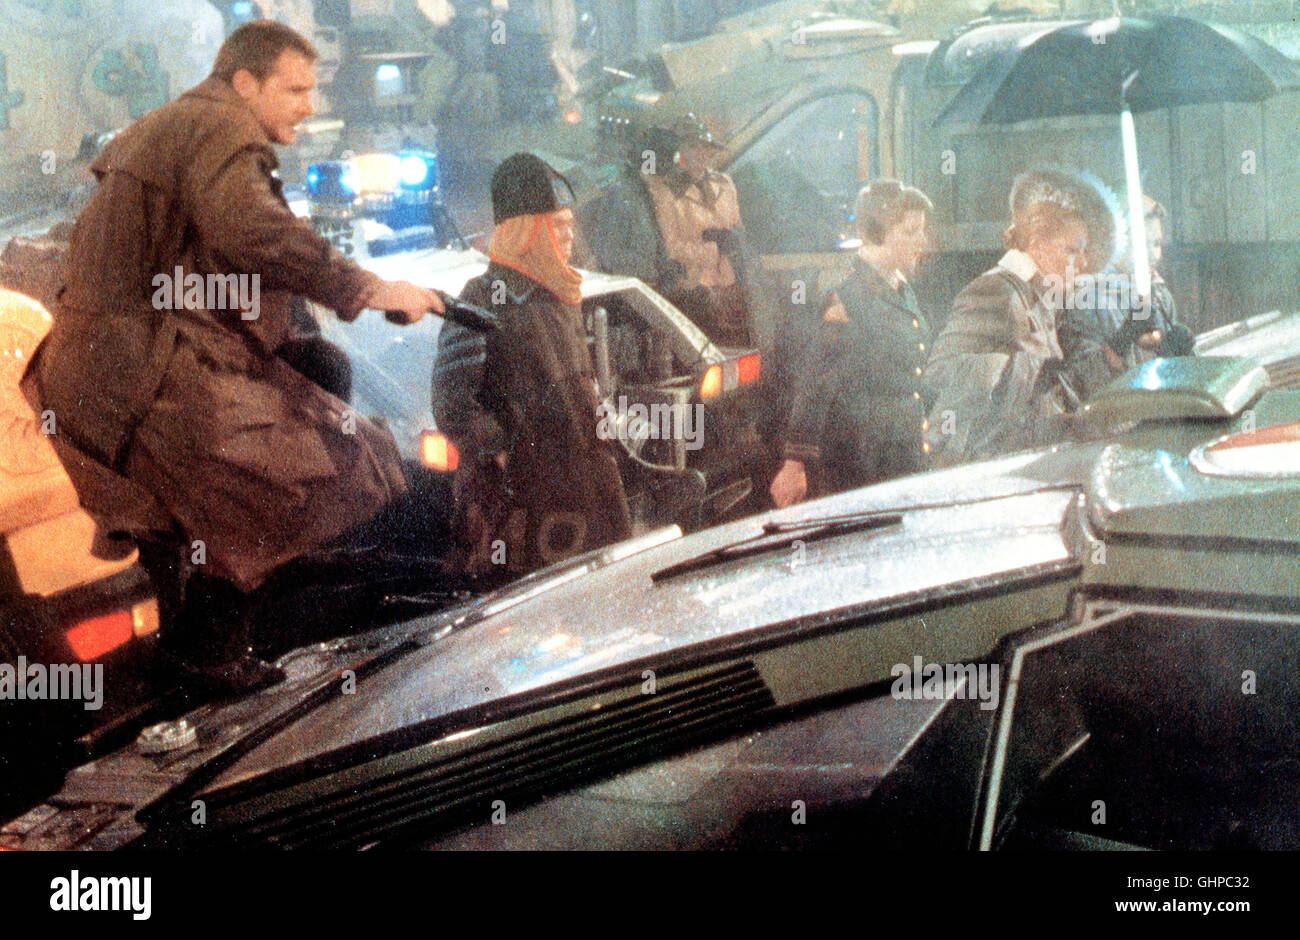 Los Angeles, 2019: Rick Deckard (HARRISON FORD) ist ein Blade Runner, ein Polizist, der untergetauchte Replikanten jagt - künstlich hergestellte Menschen, die nur für vier Jahre programmiert sind und plötzlich einen Überlebensdrang entwickeln. Rick gerät in einen Konflikt, als er sich in die schöne Replikantin Rachel verliebt. Regie: Ridley Scott aka. Blade Runner Stock Photo